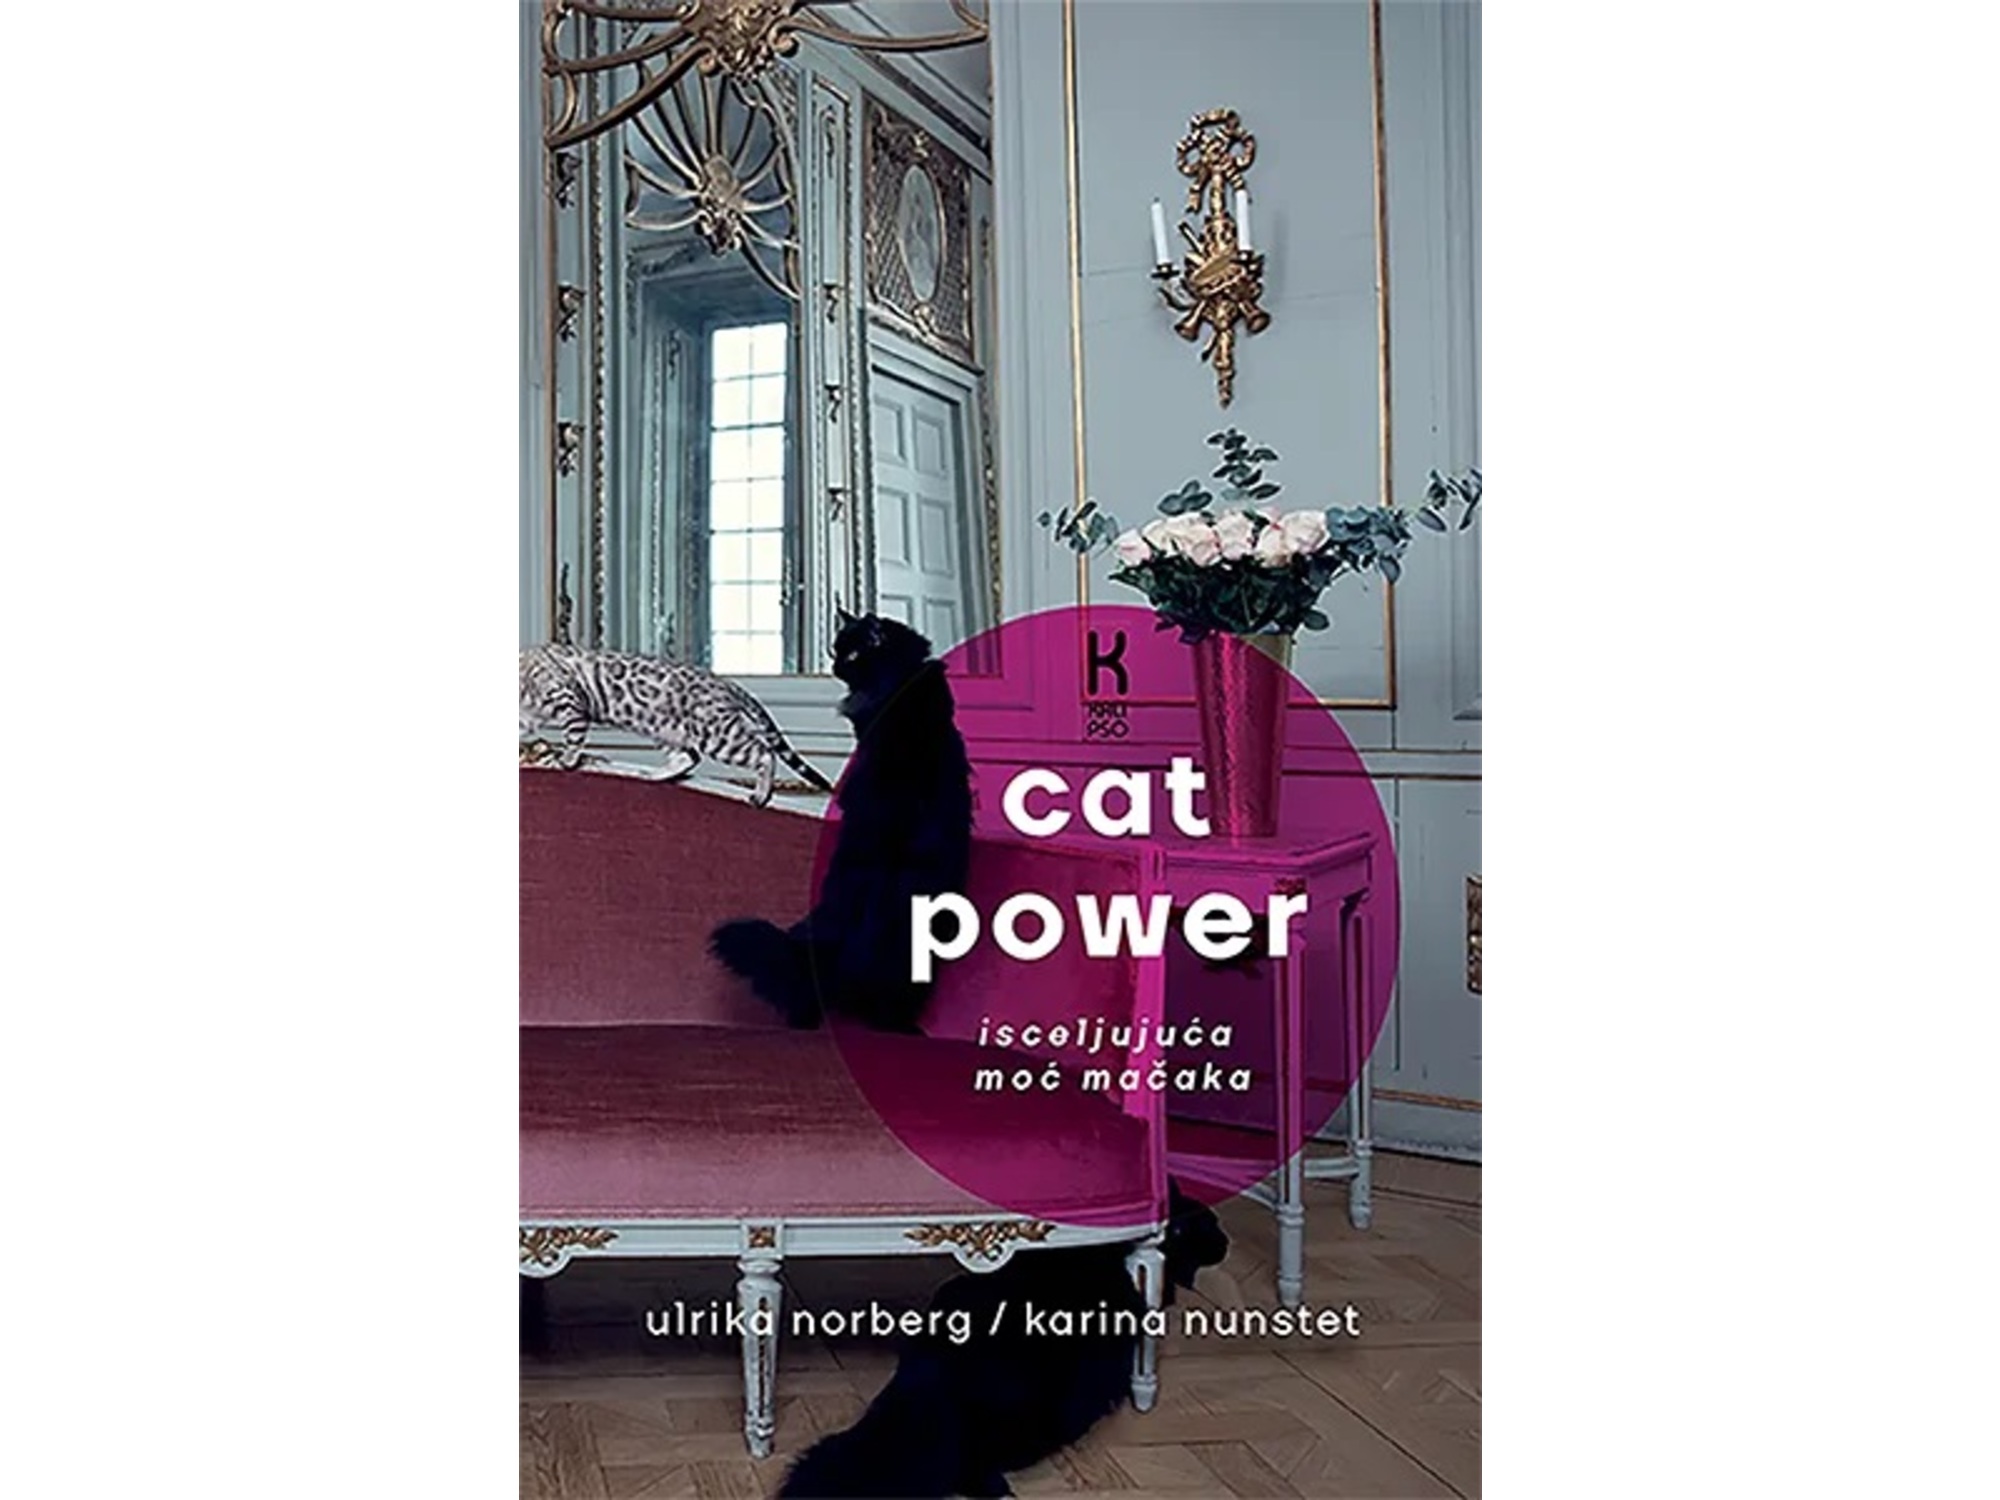 Cat power: isceljujuća moć mačaka - Ulrika Norberg, Karina Nunstet